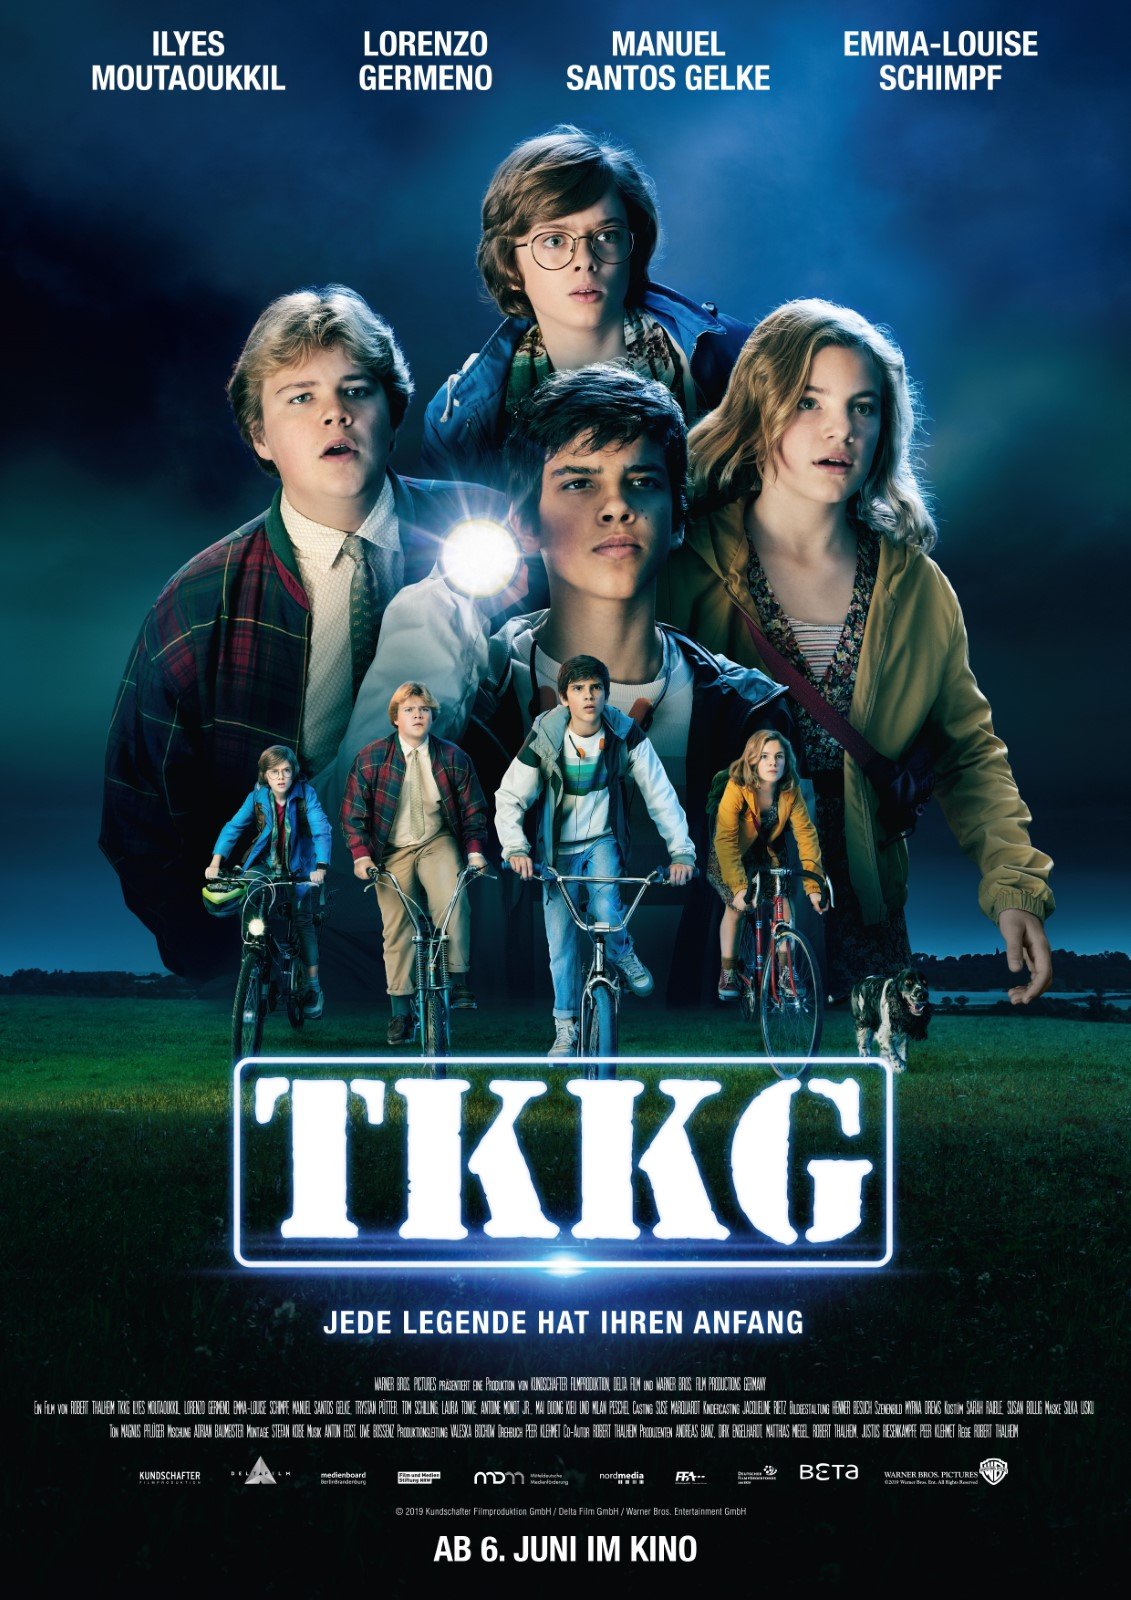 TKKG Film 2019 FILMSTARTS.de